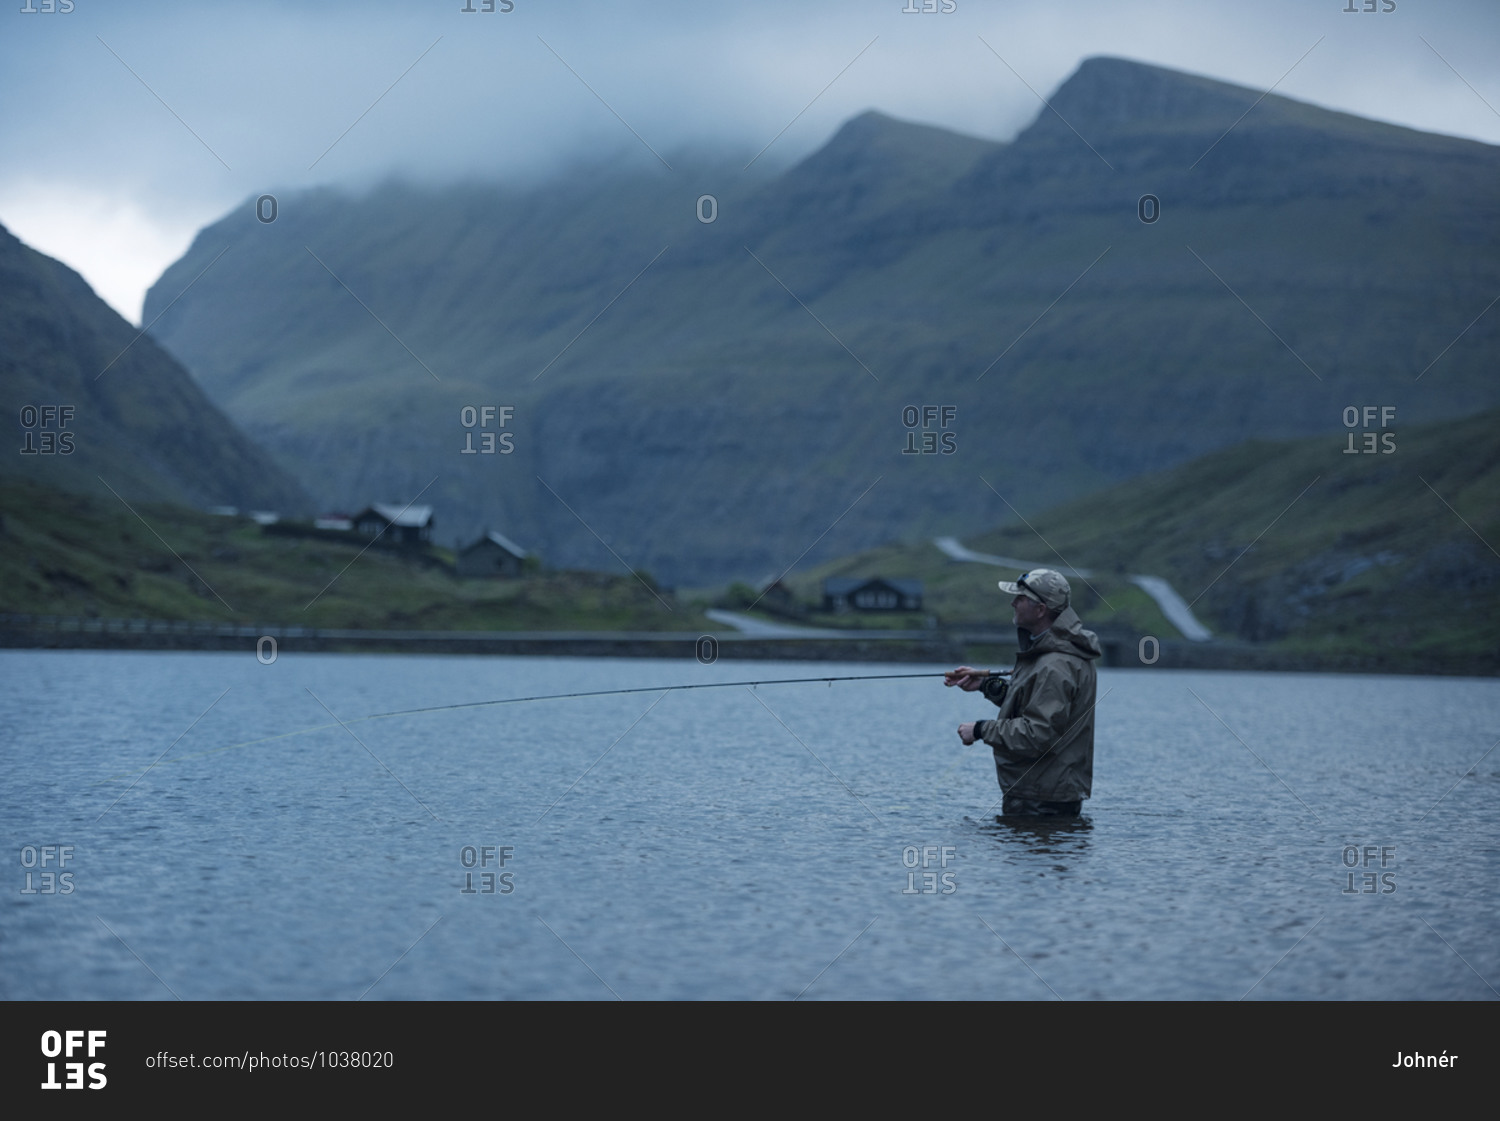 Man fly fishing in lake. Detailed shot.